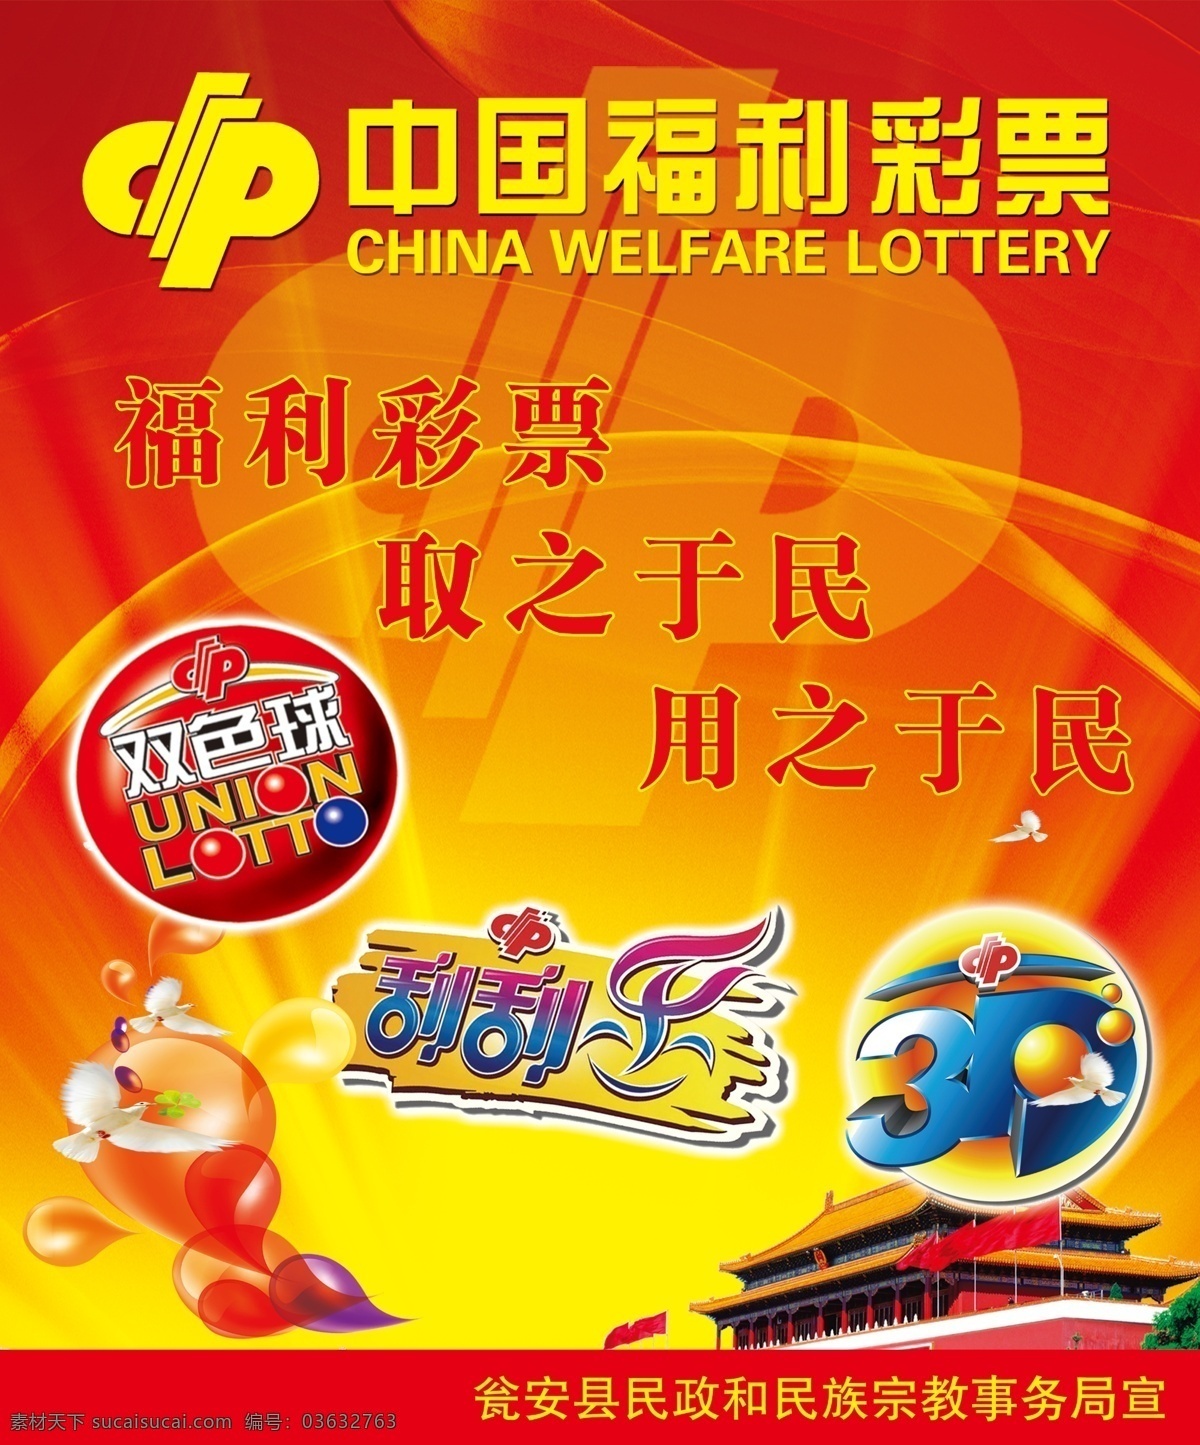 中国 福利彩票 3d 福彩 刮刮乐 广告设计模板 红色背景 双色球 源文件 海报 广告设计模版 海报背景图